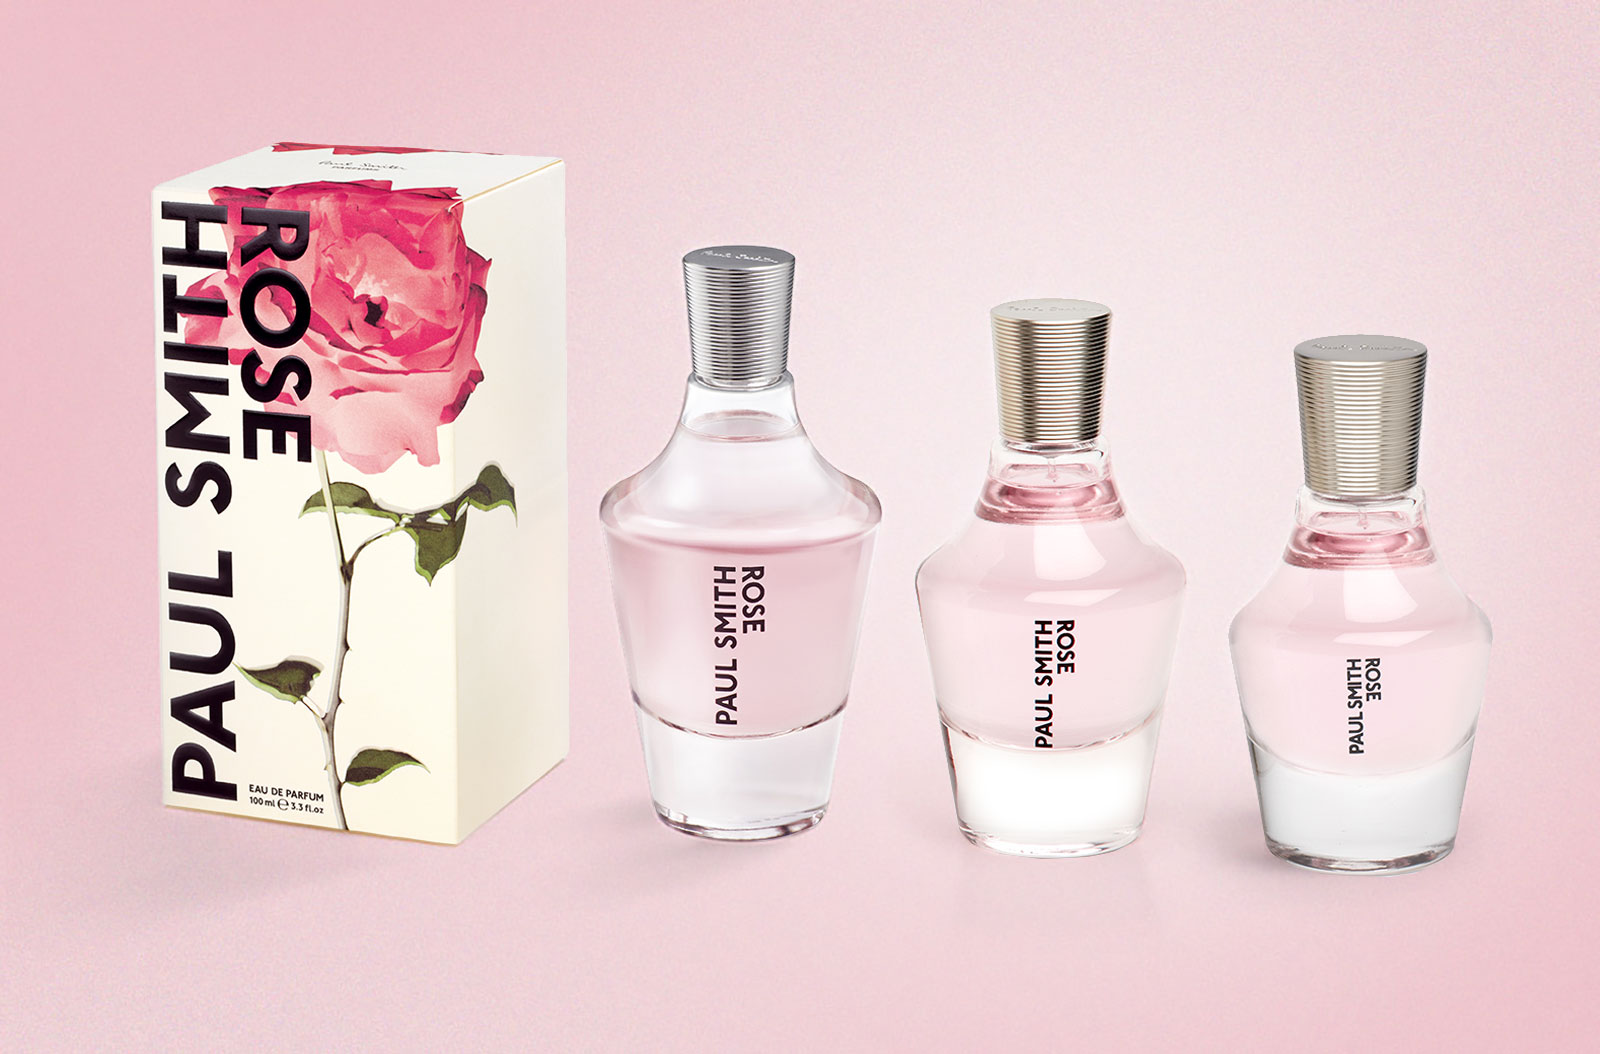 paulsmith-perfumes | Reastars Perfume and Beauty magazine